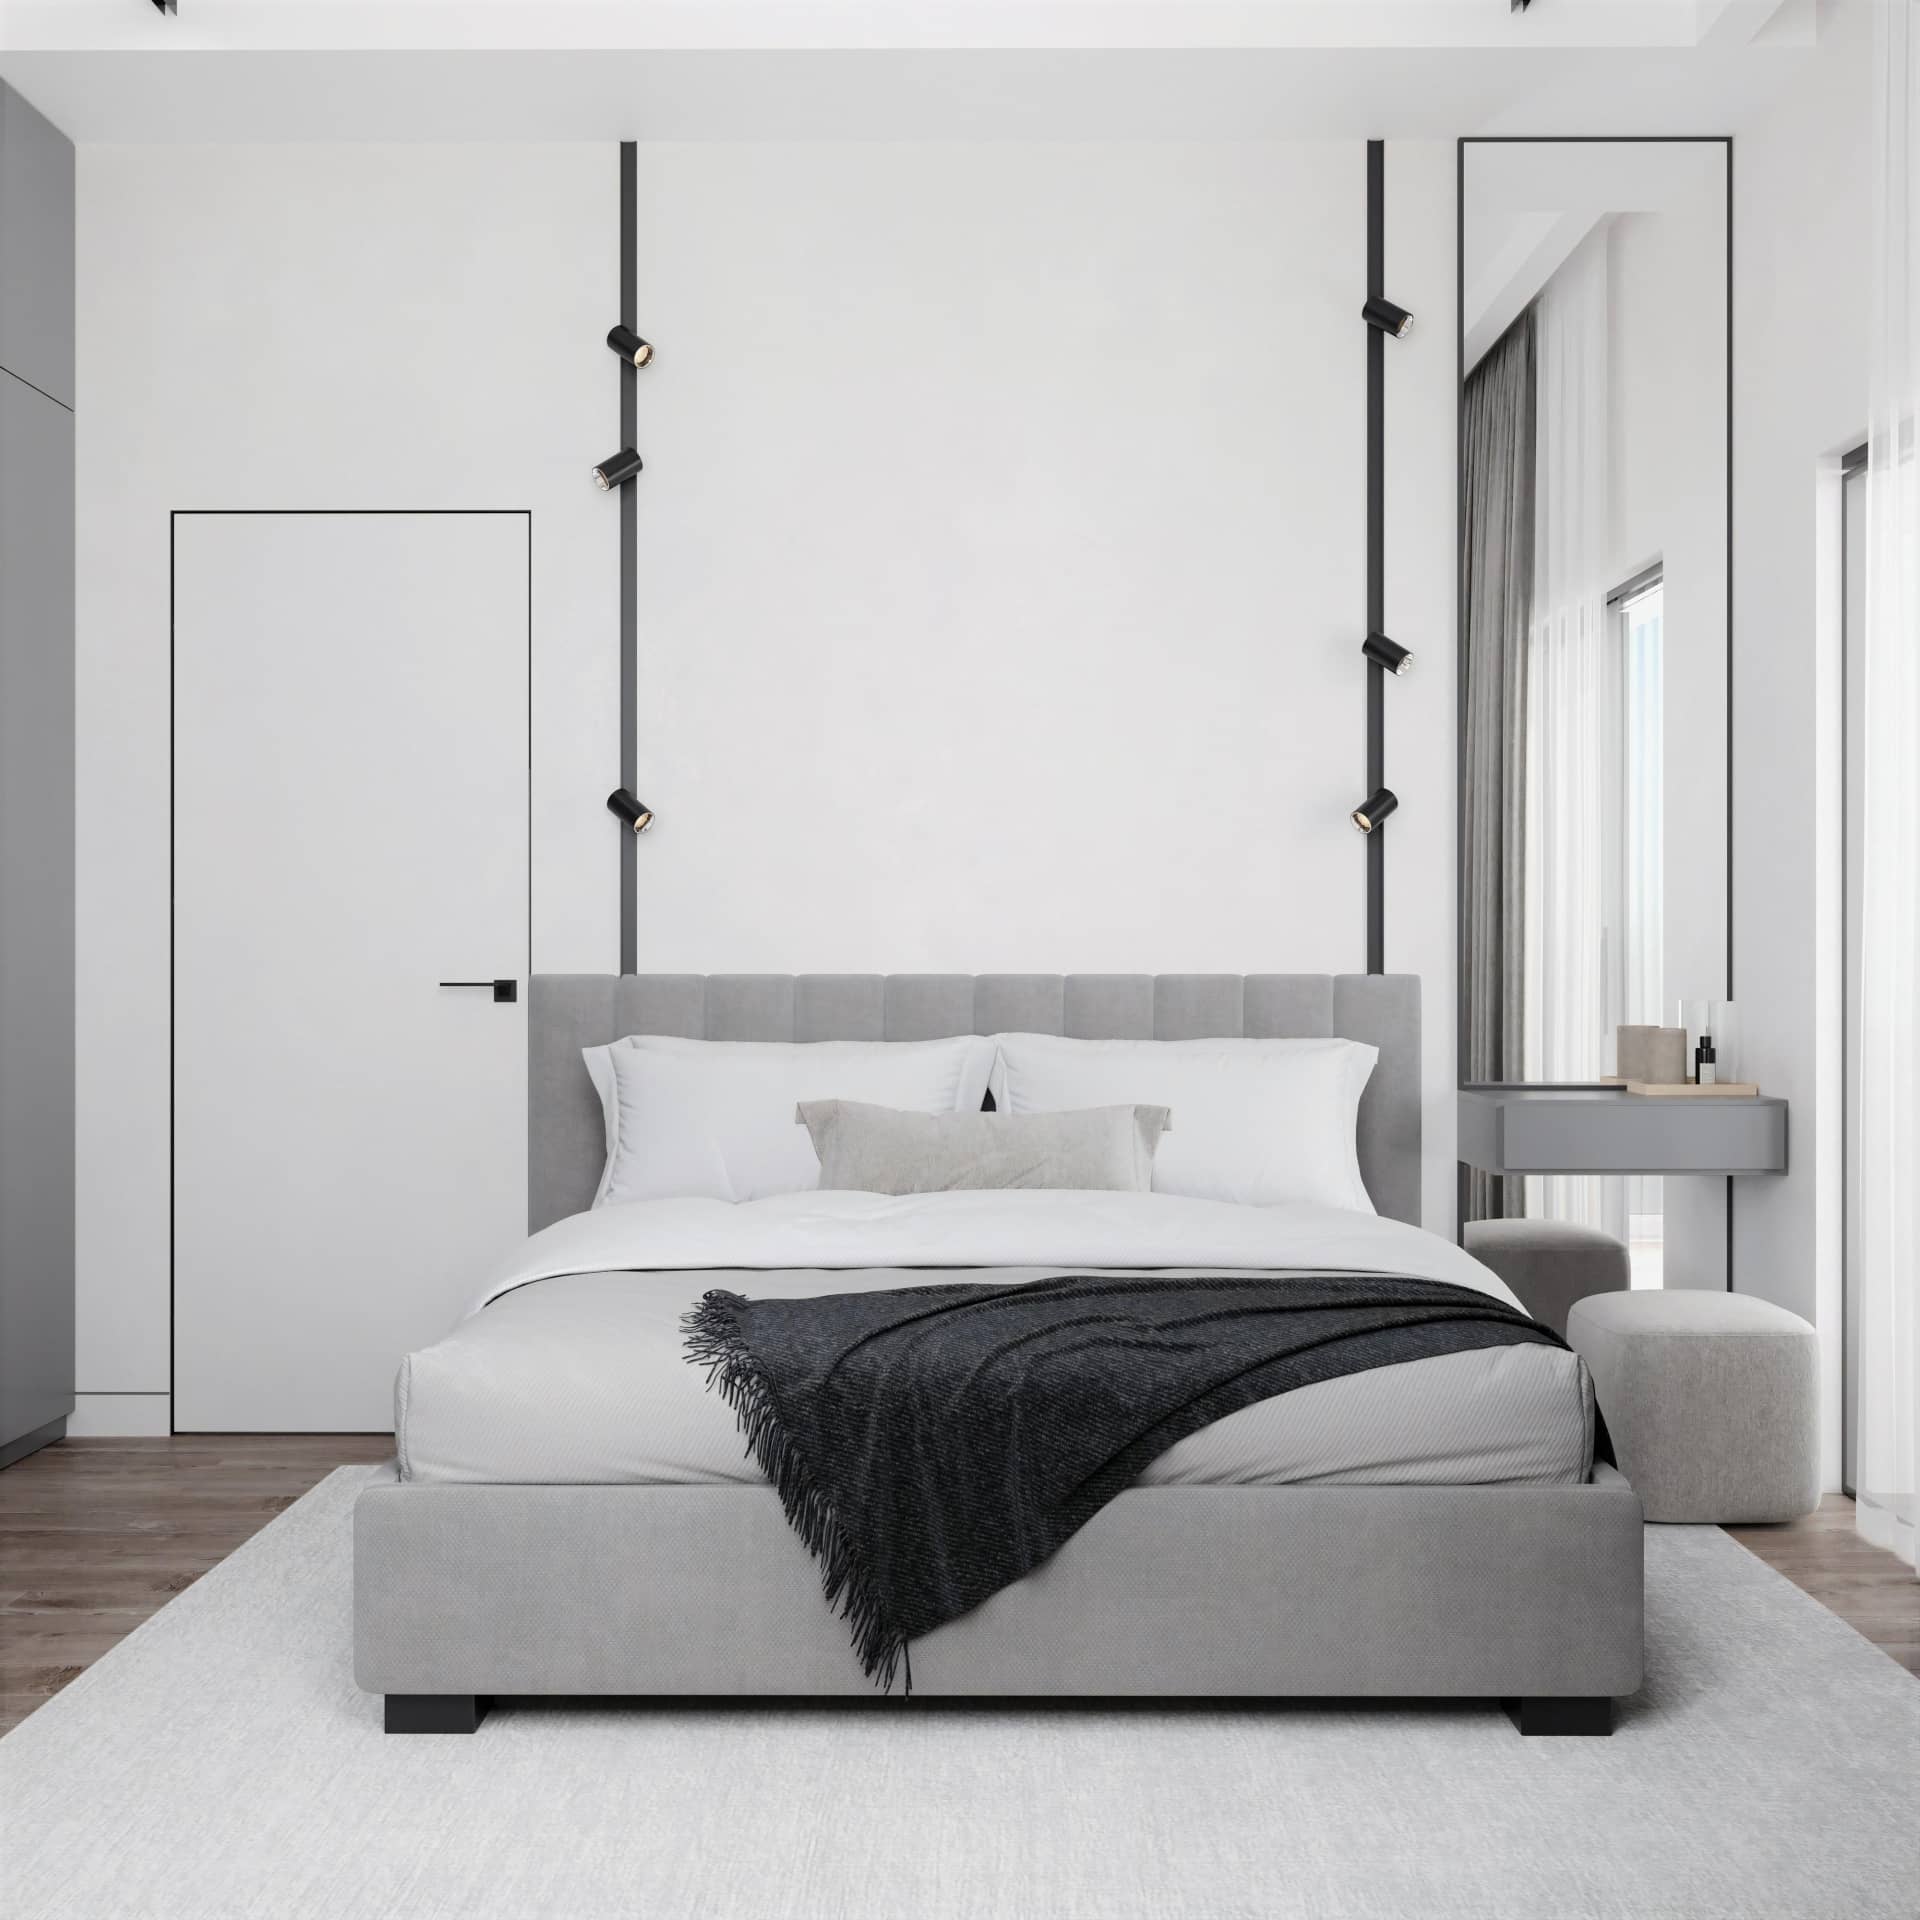 В дизайне спальни востребованы спокойные природные оттенки и чёрно-белый минимализм